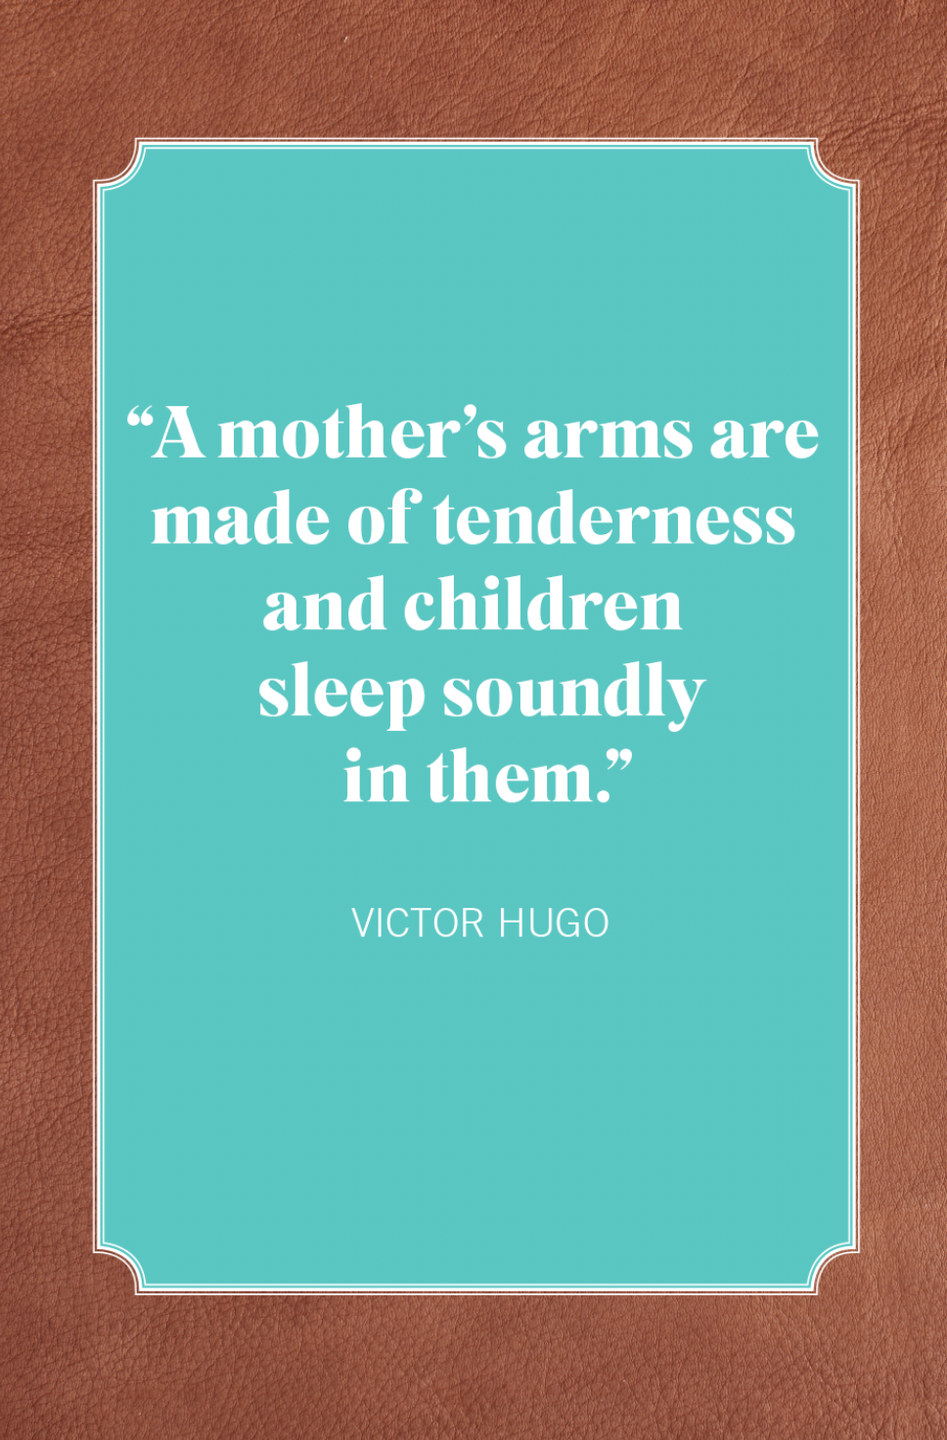 boy mom quotes victor hugo